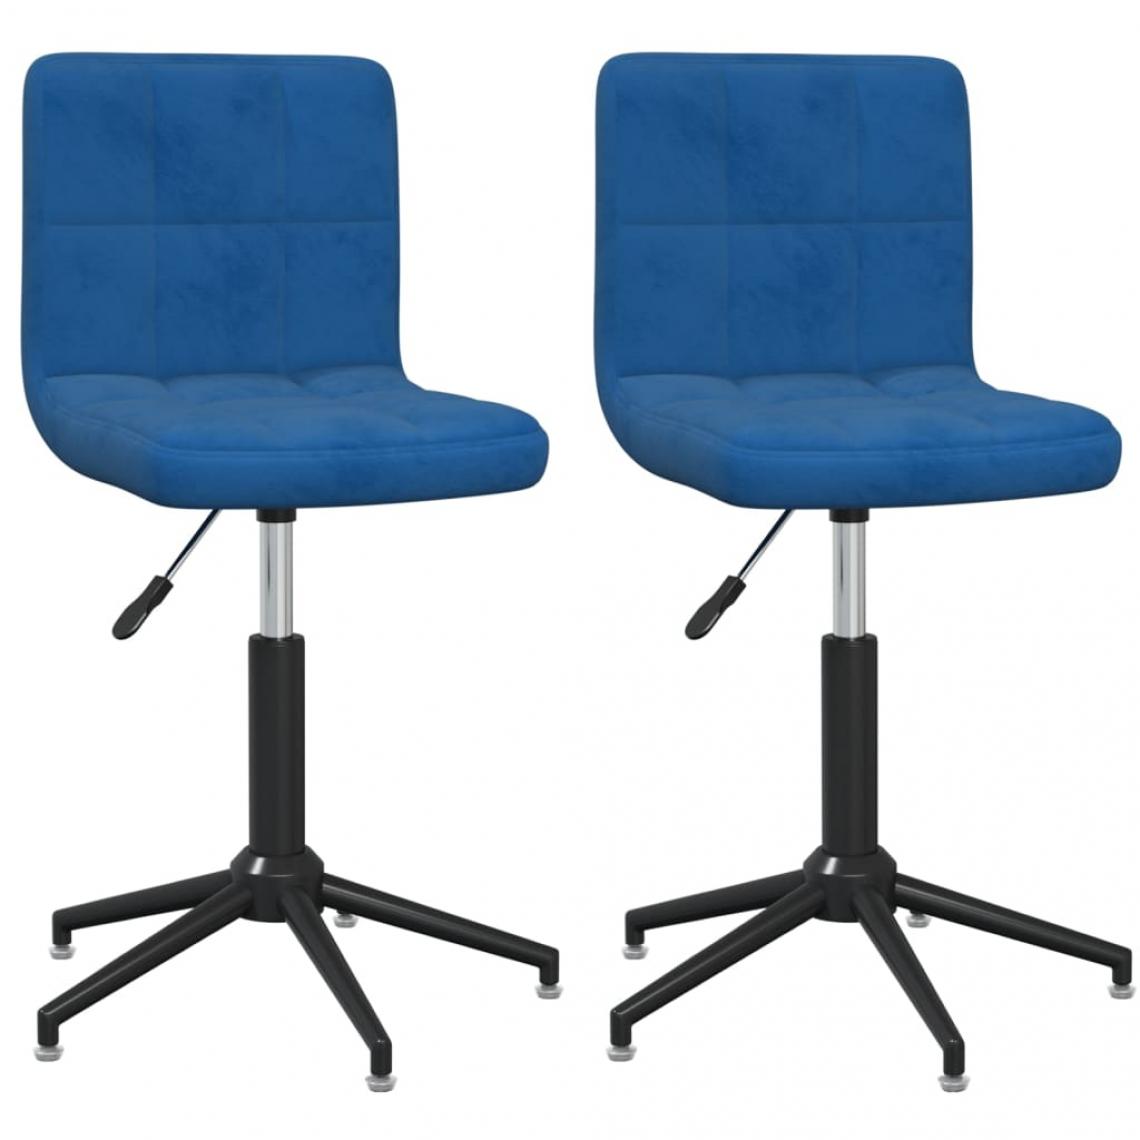 Decoshop26 - Lot de 2 chaises de salle à manger cuisine design moderne velours bleu CDS020253 - Chaises